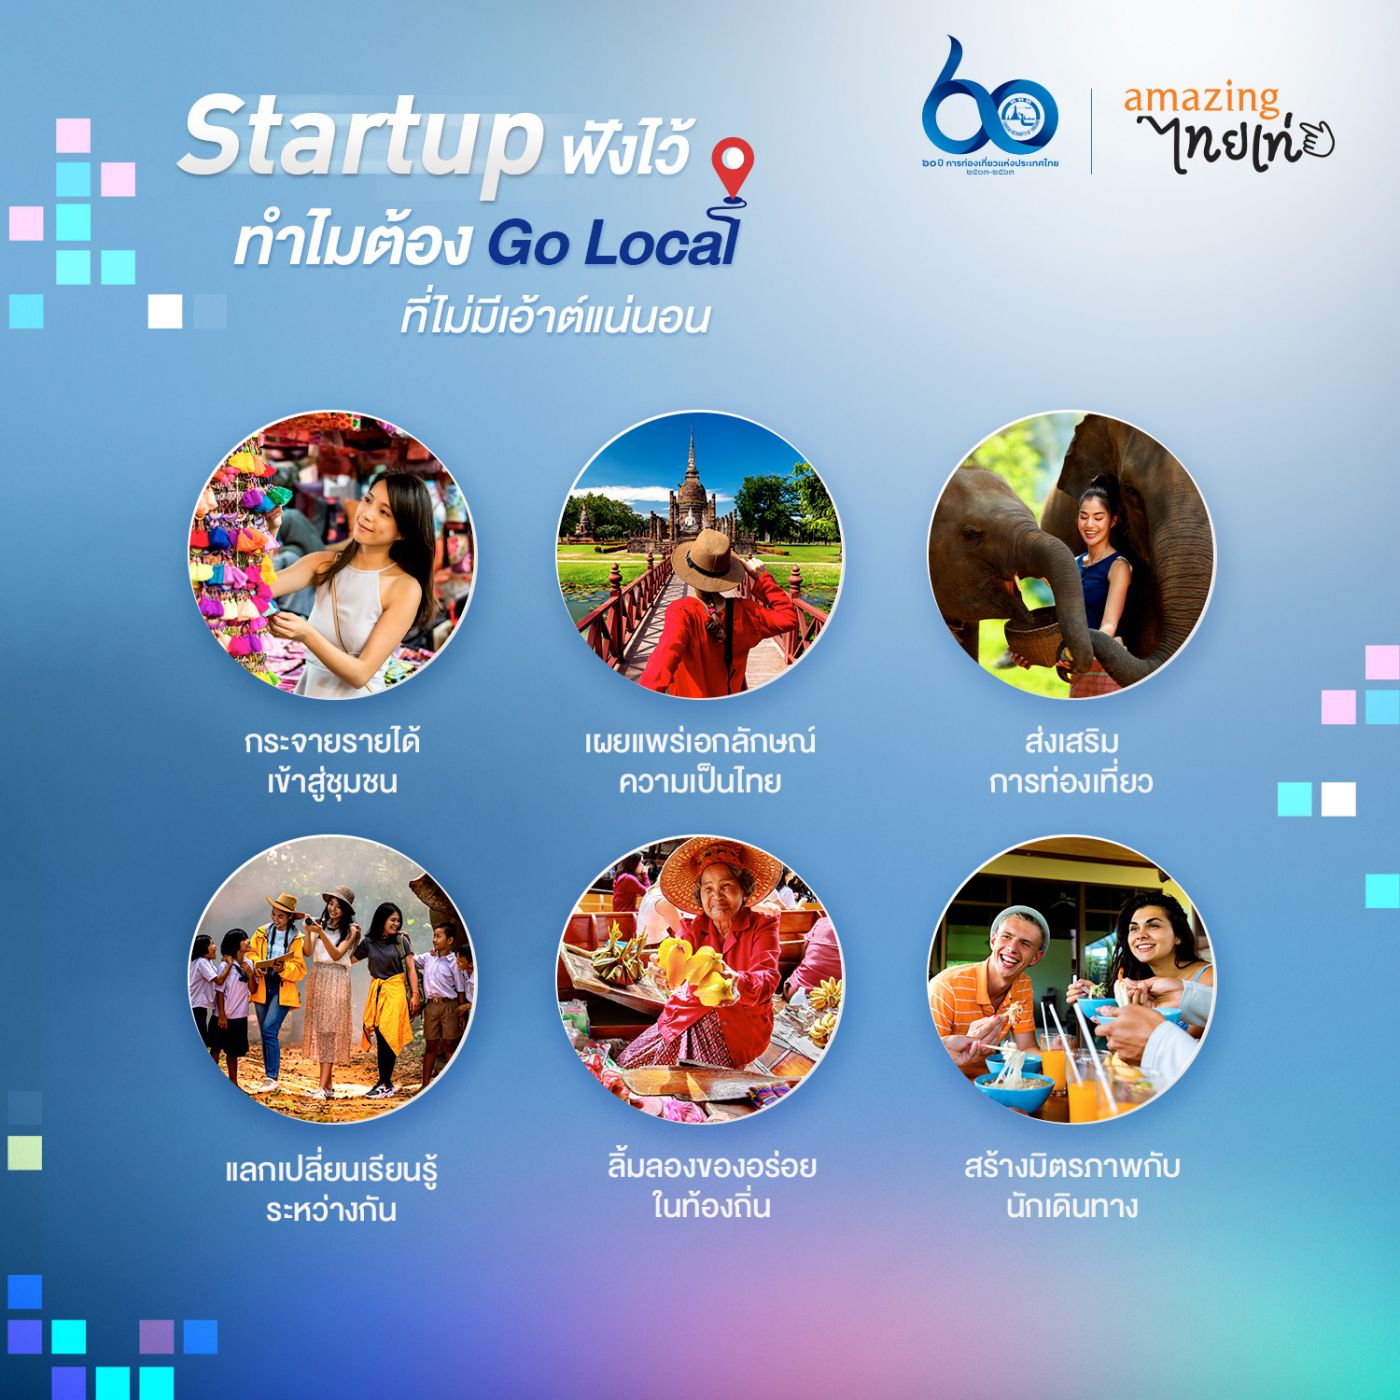 ททท ชวน Startup go Local ด้วยแพลตฟอร์มออนไลน์ Travel Tech